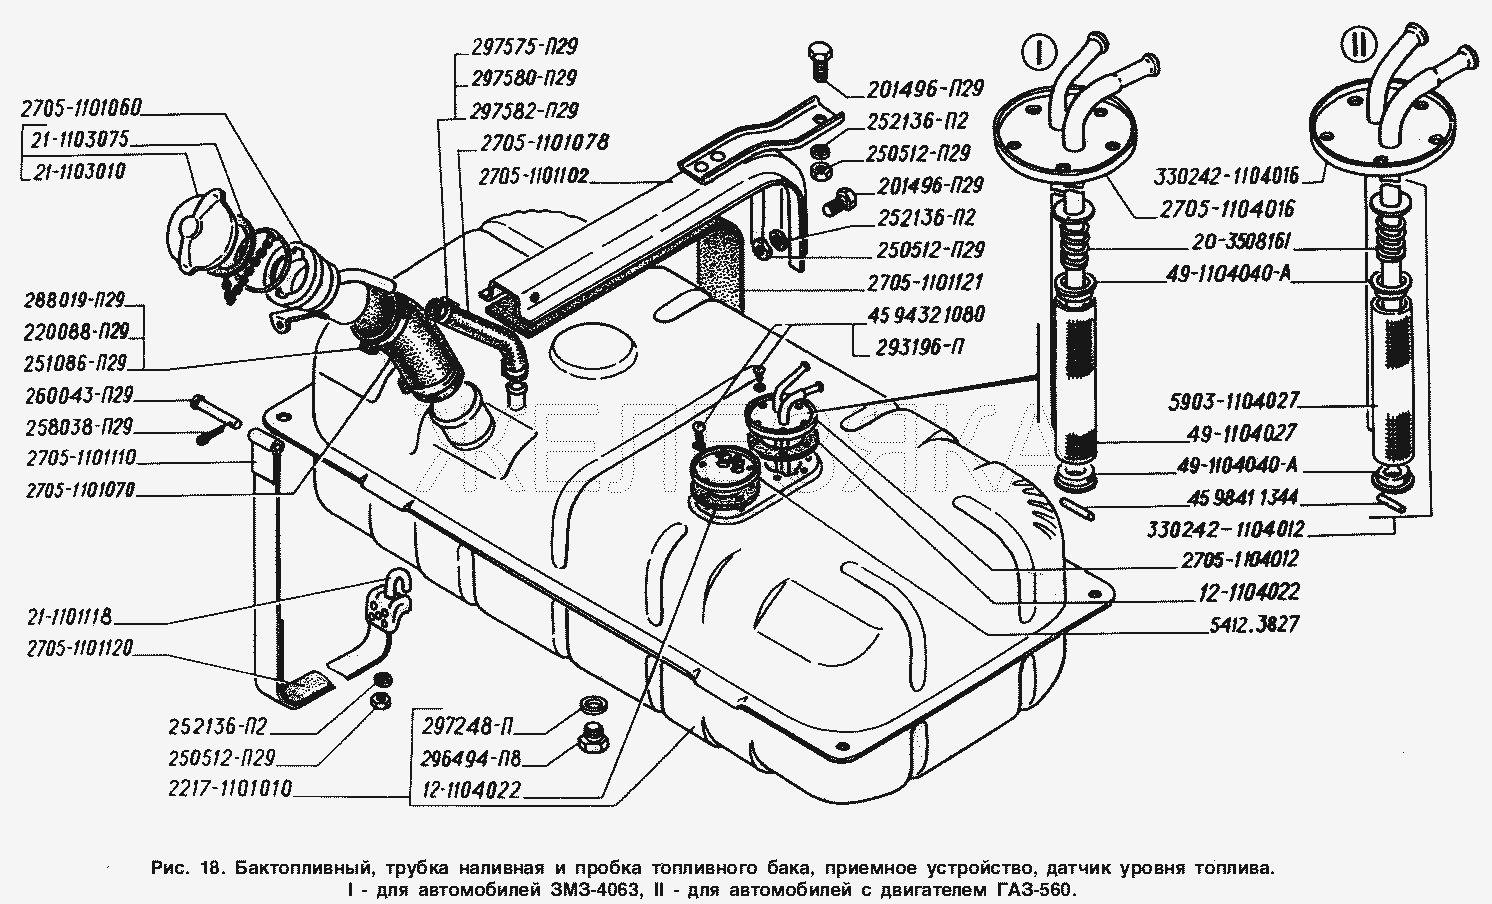 Бак топливный, труба наливная и пробка топливного бака, приемное устройство, датчик уровня топлива: I - для автомобилей с двигателем ЗМЗ-4063, II - для автомобилей с двигателем ГАЗ-560.  ГАЗ-2217 (Соболь)